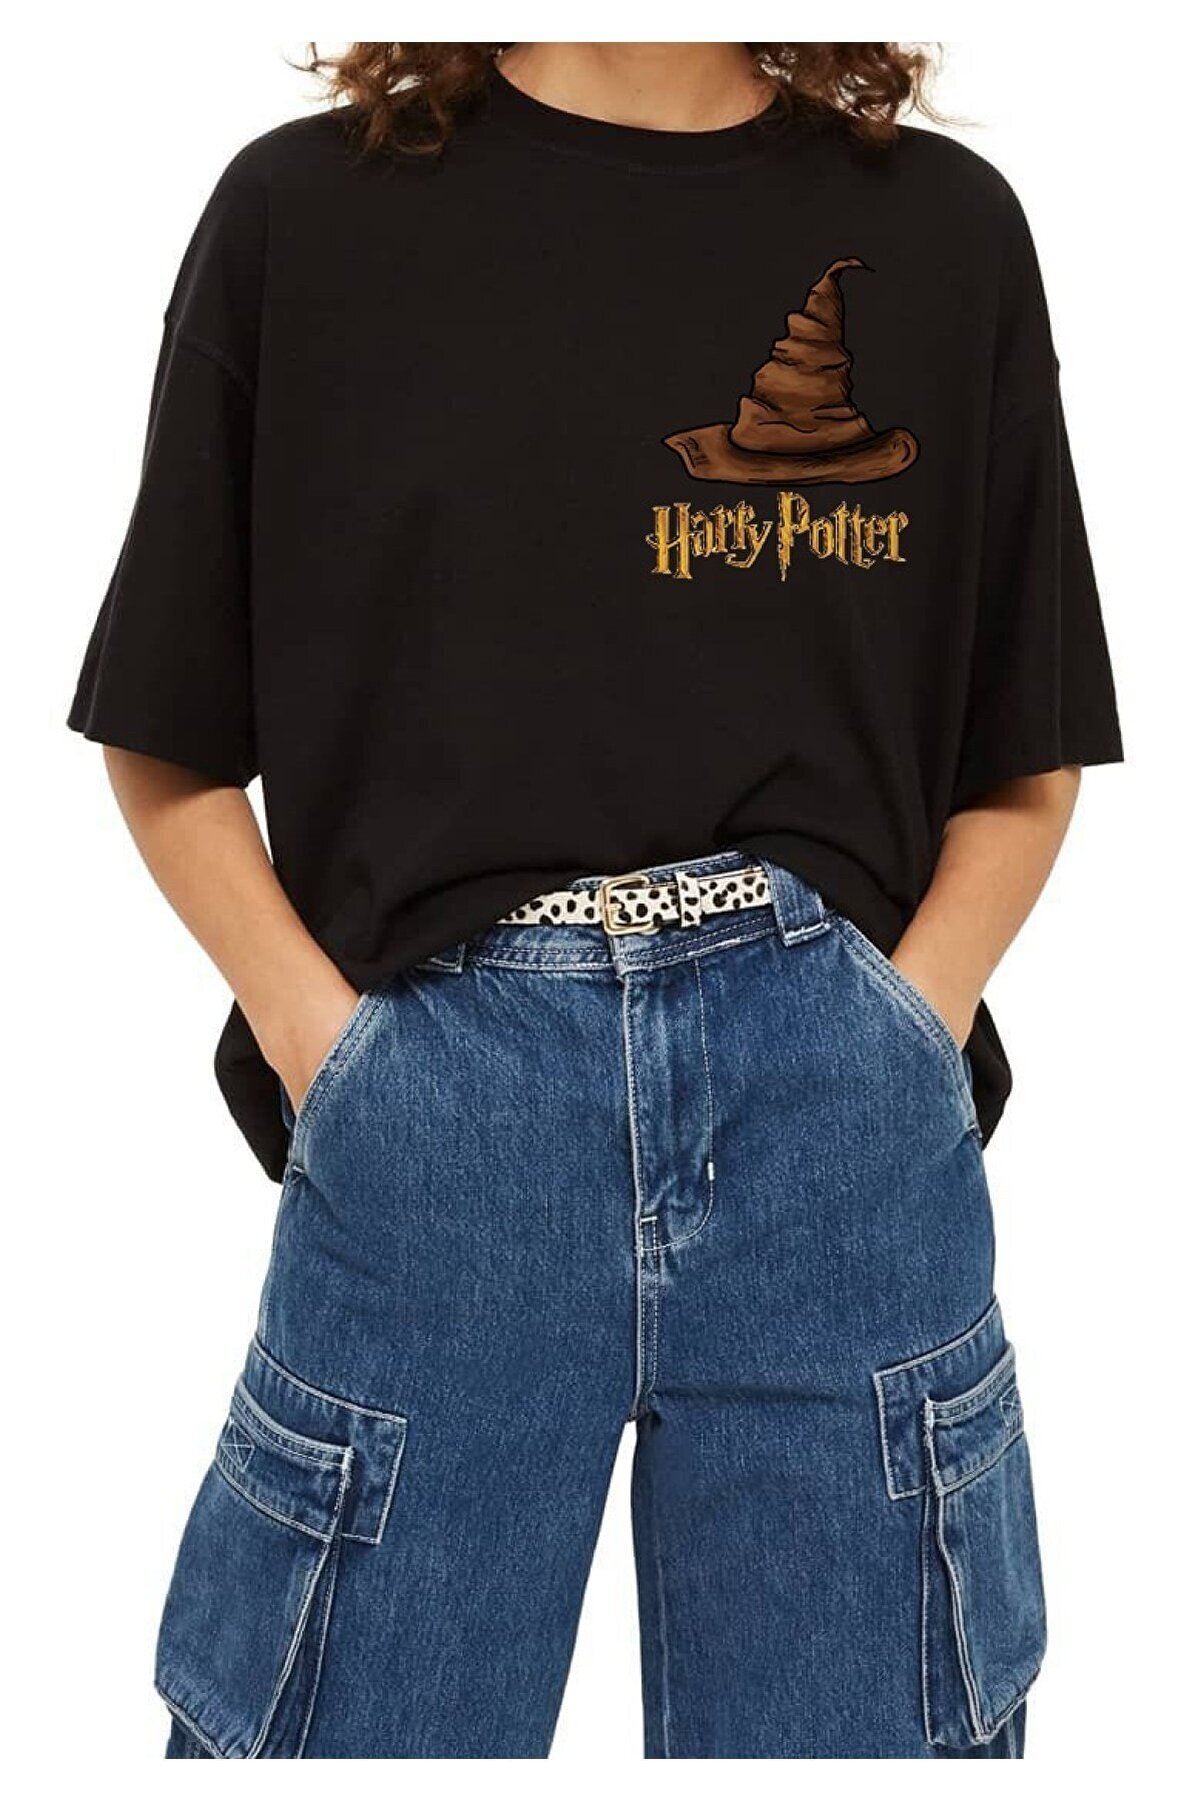 JOKERMERSİN New Oversize Harry Potter T-shirt